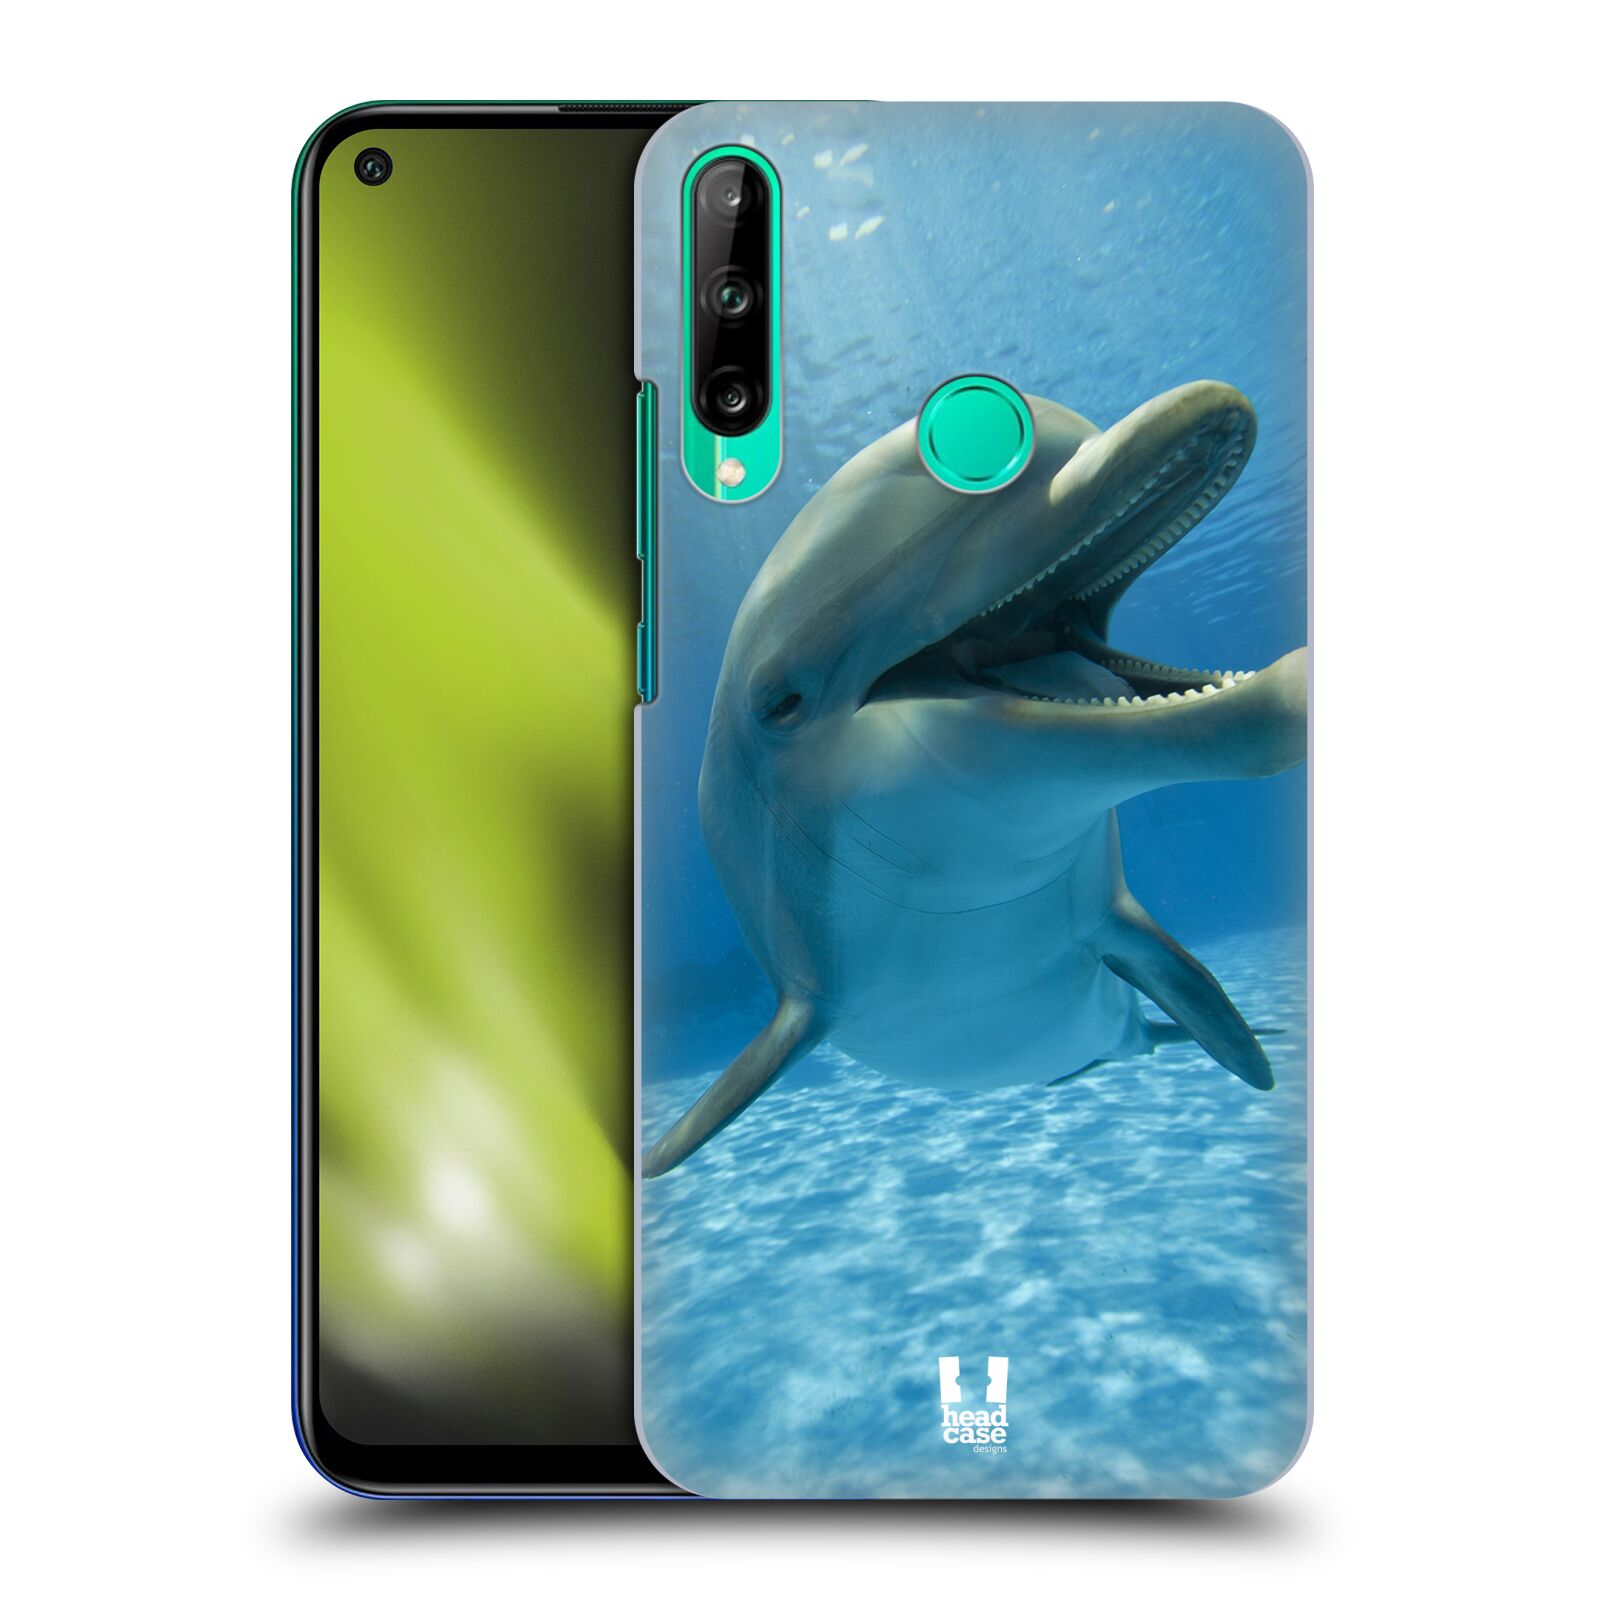 Zadní obal pro mobil Huawei P40 Lite E - HEAD CASE - Svět zvířat delfín v moři